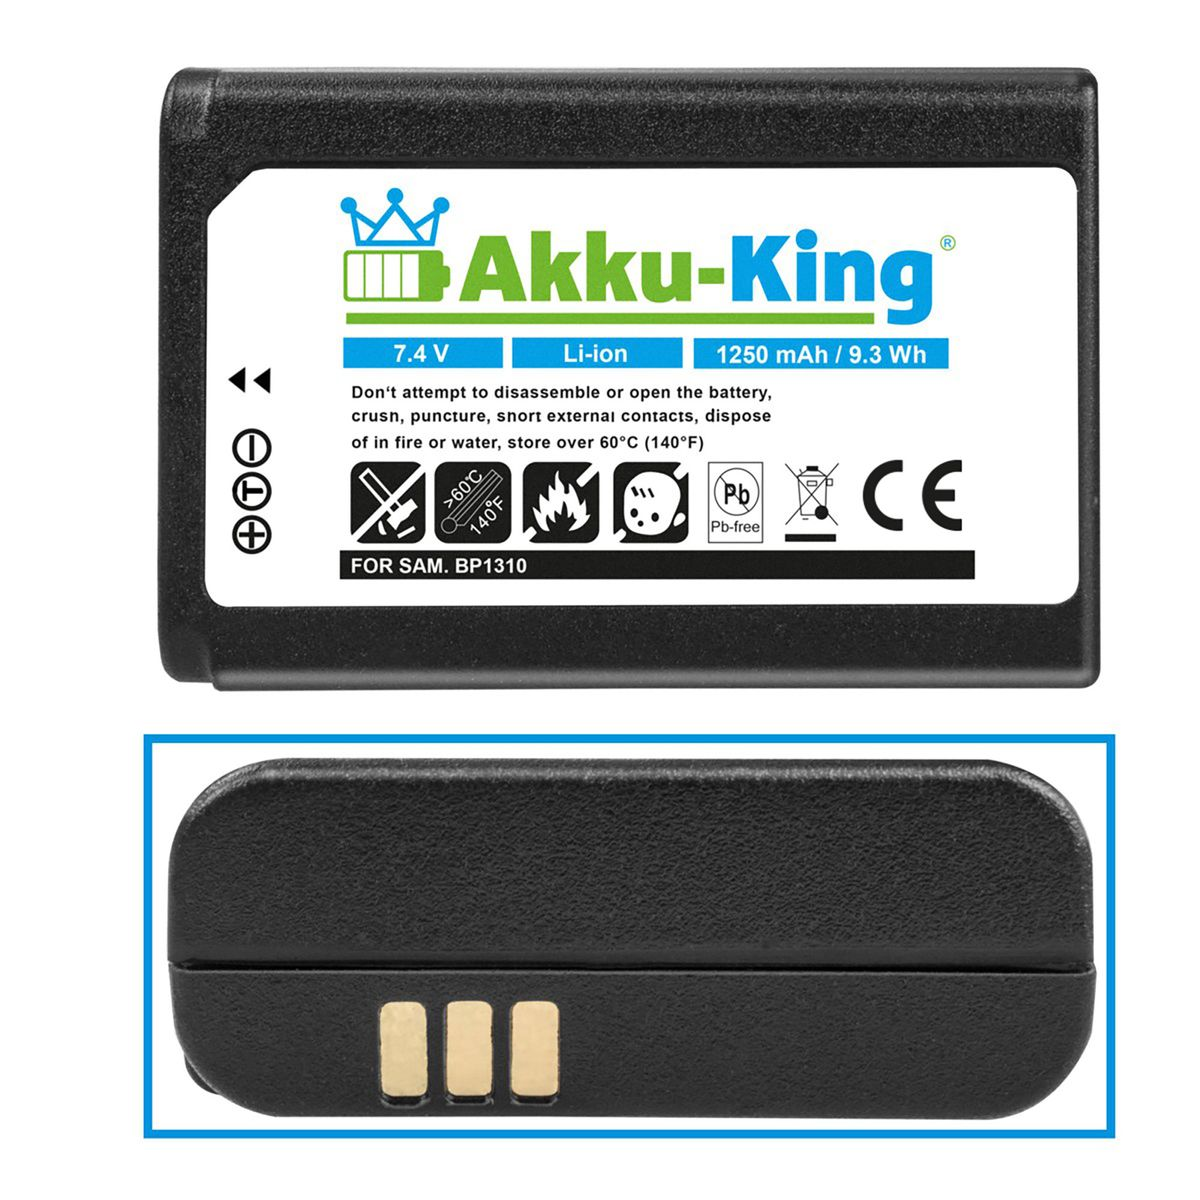 Akku Volt, AKKU-KING kompatibel Samsung 7.4 mit Kamera-Akku, BP-1310 Li-Ion 1250mAh